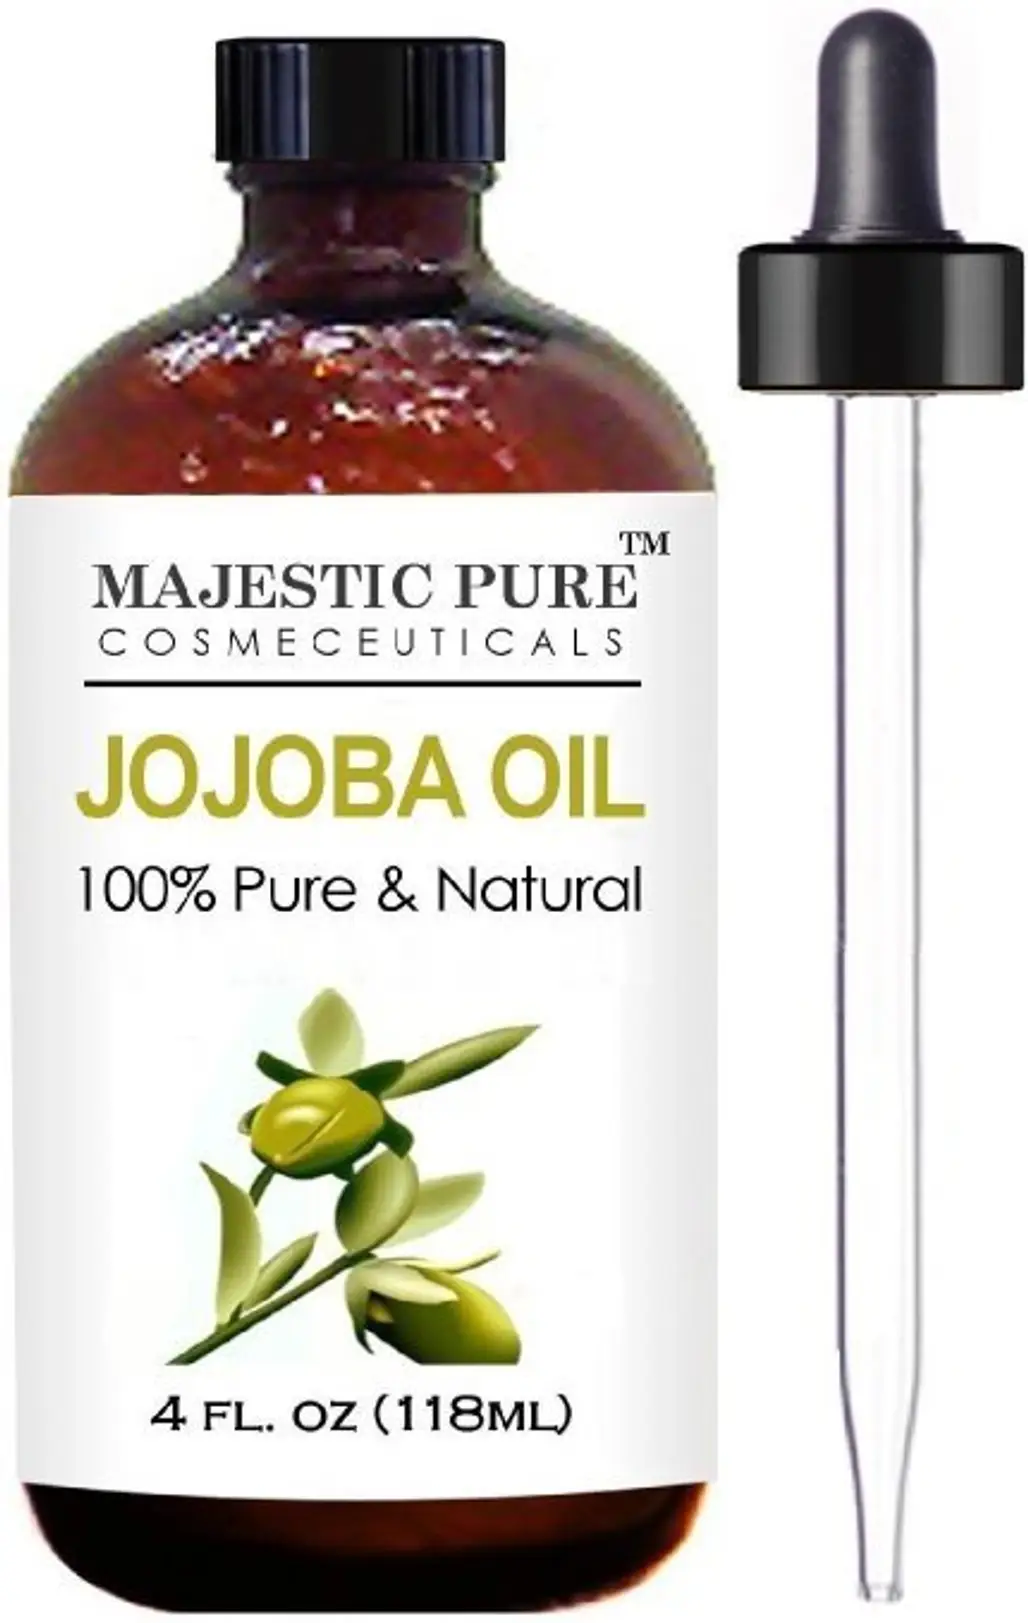 Majestic Pure Jojoba Oil